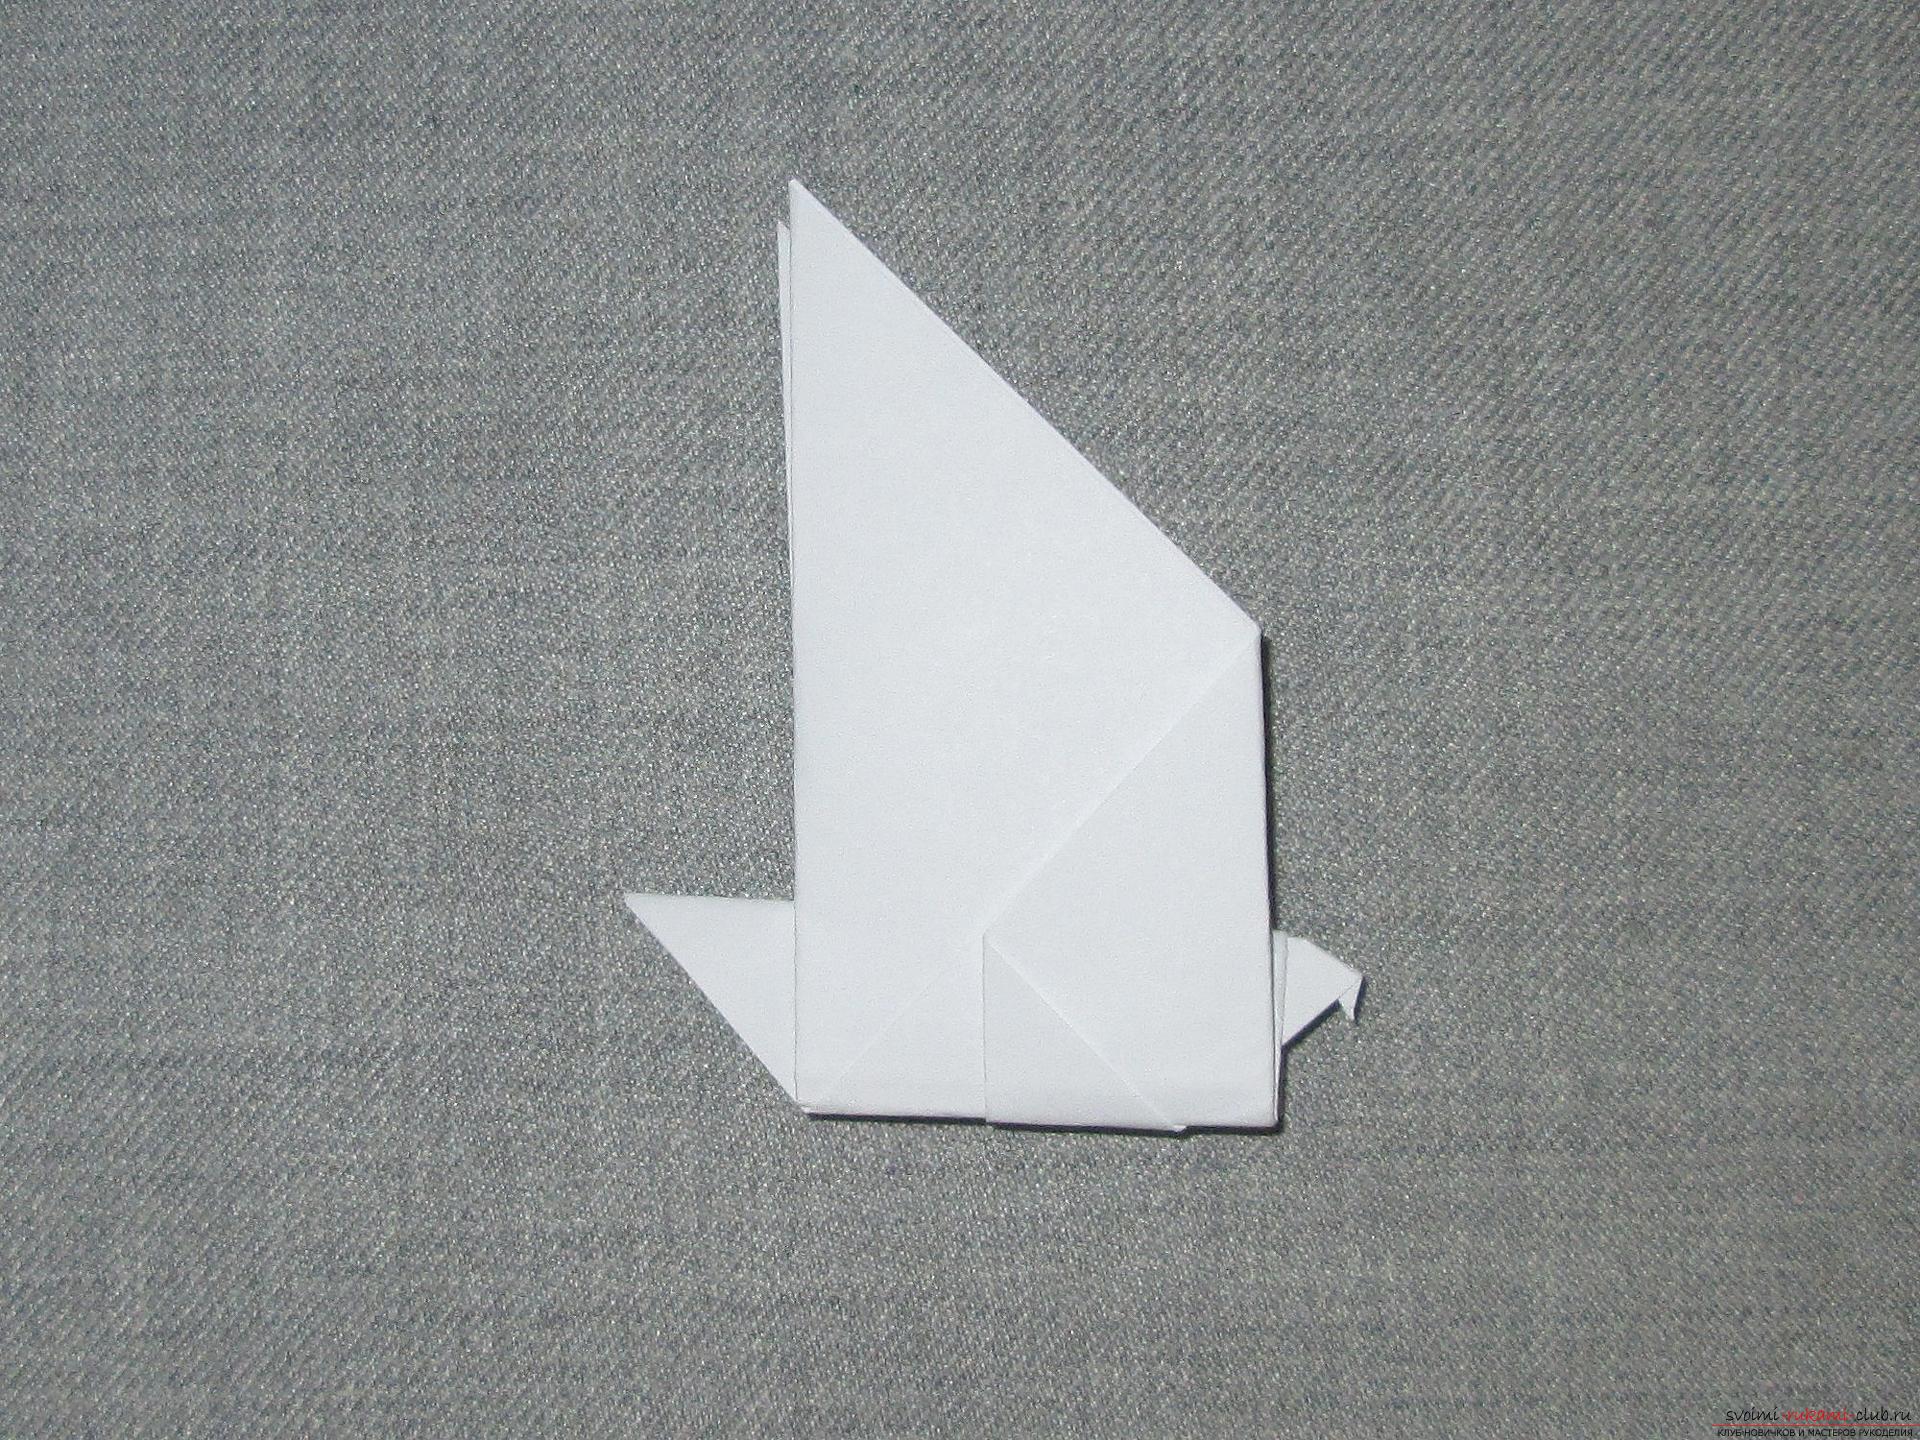 Deze gedetailleerde workshop van origami voor kinderen van 8 jaar leert hoe je origami-duiven van papier kunt maken. Foto # 8